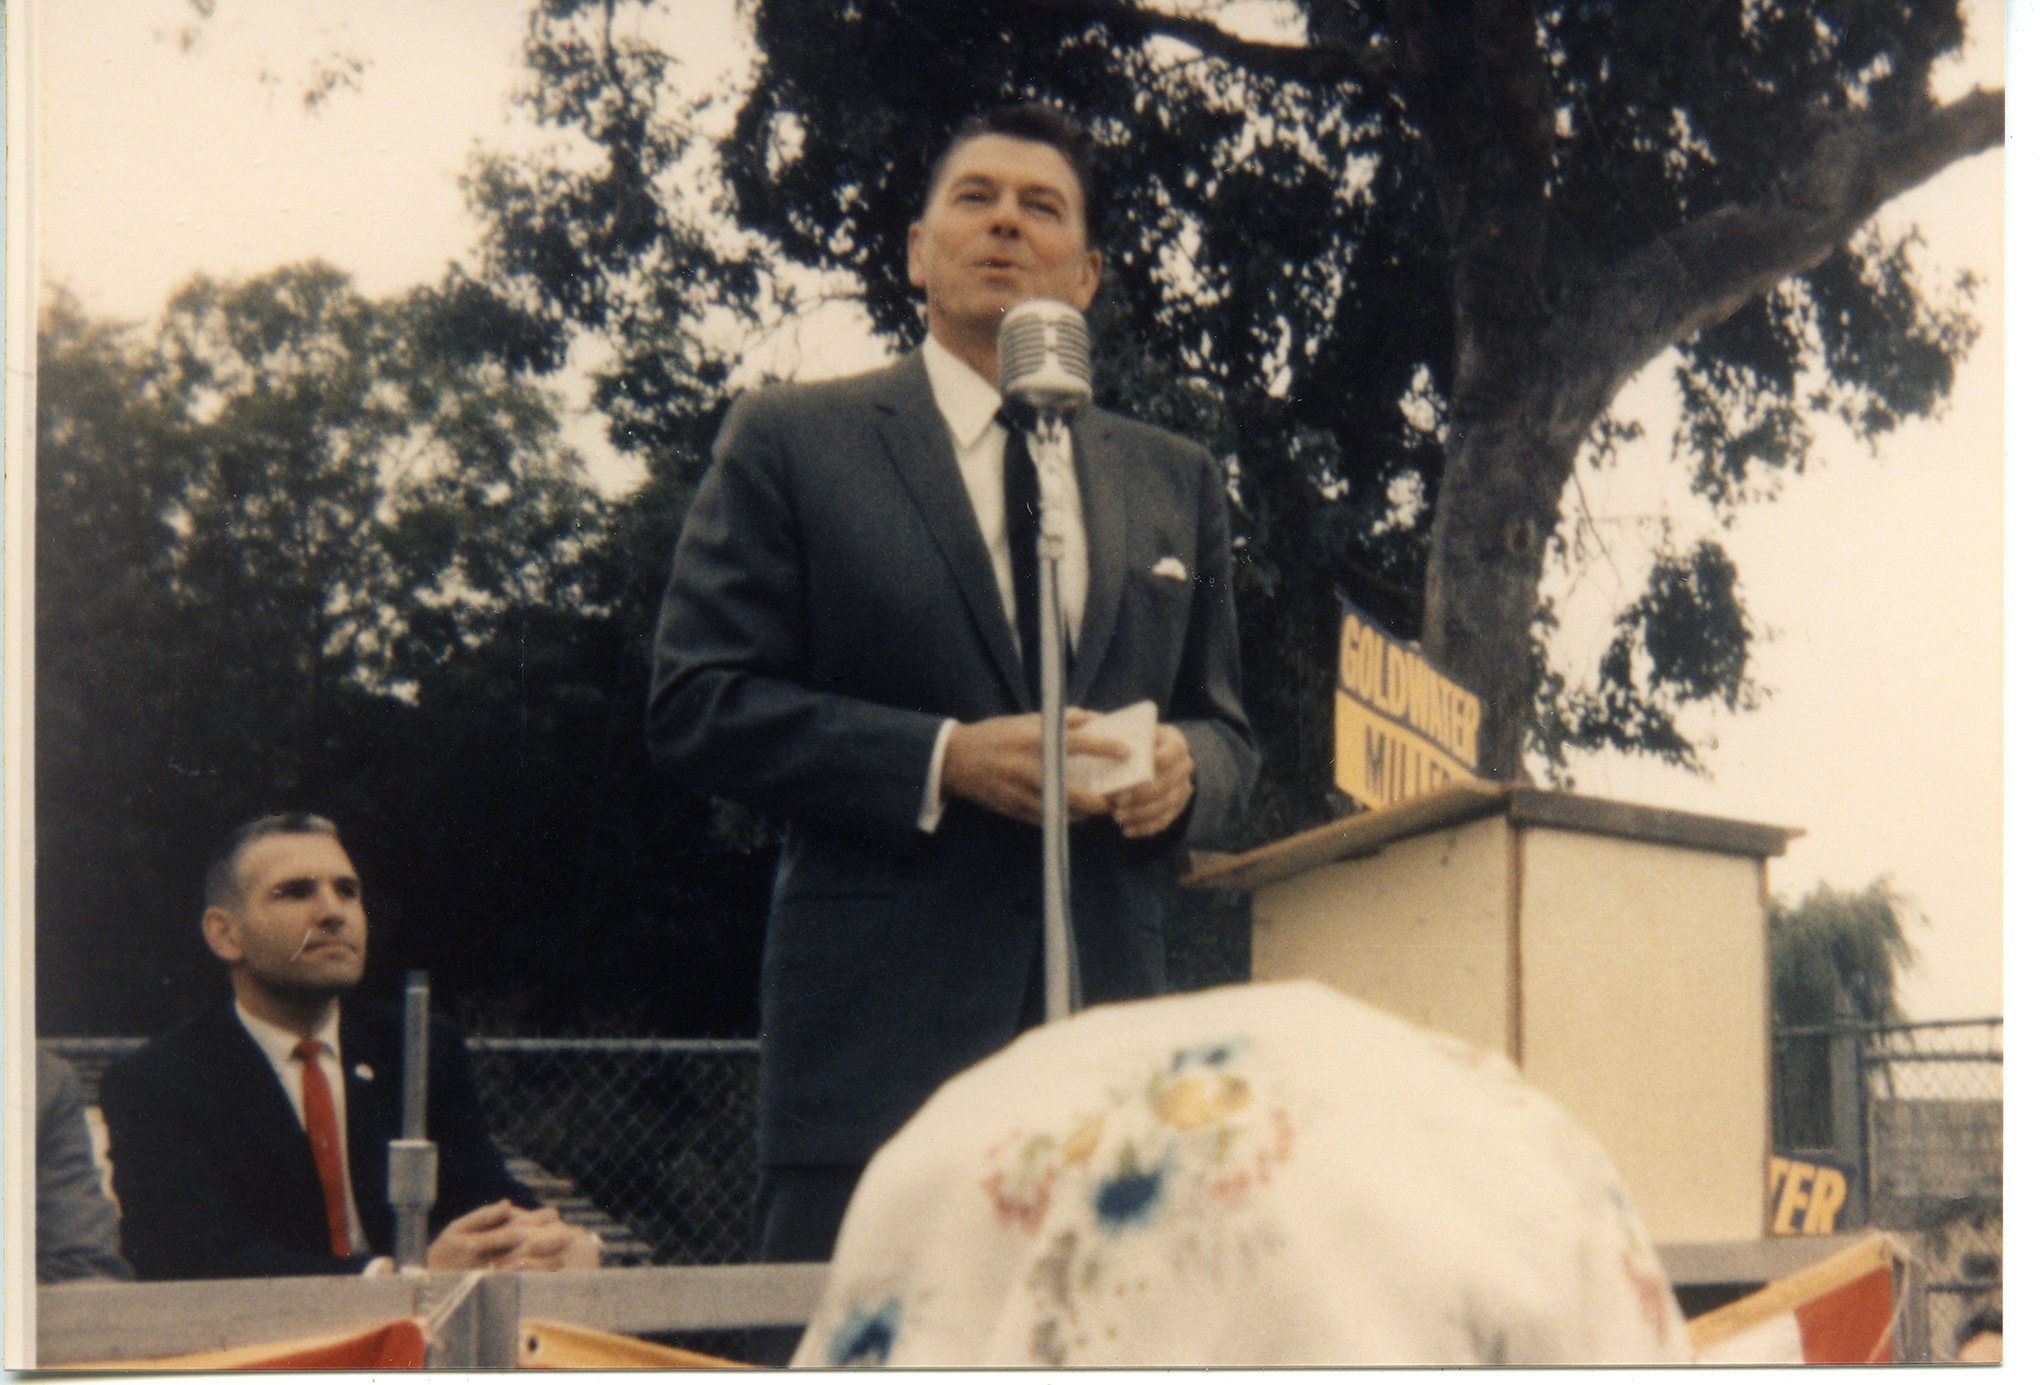 Ronald Reagan, circa 1964